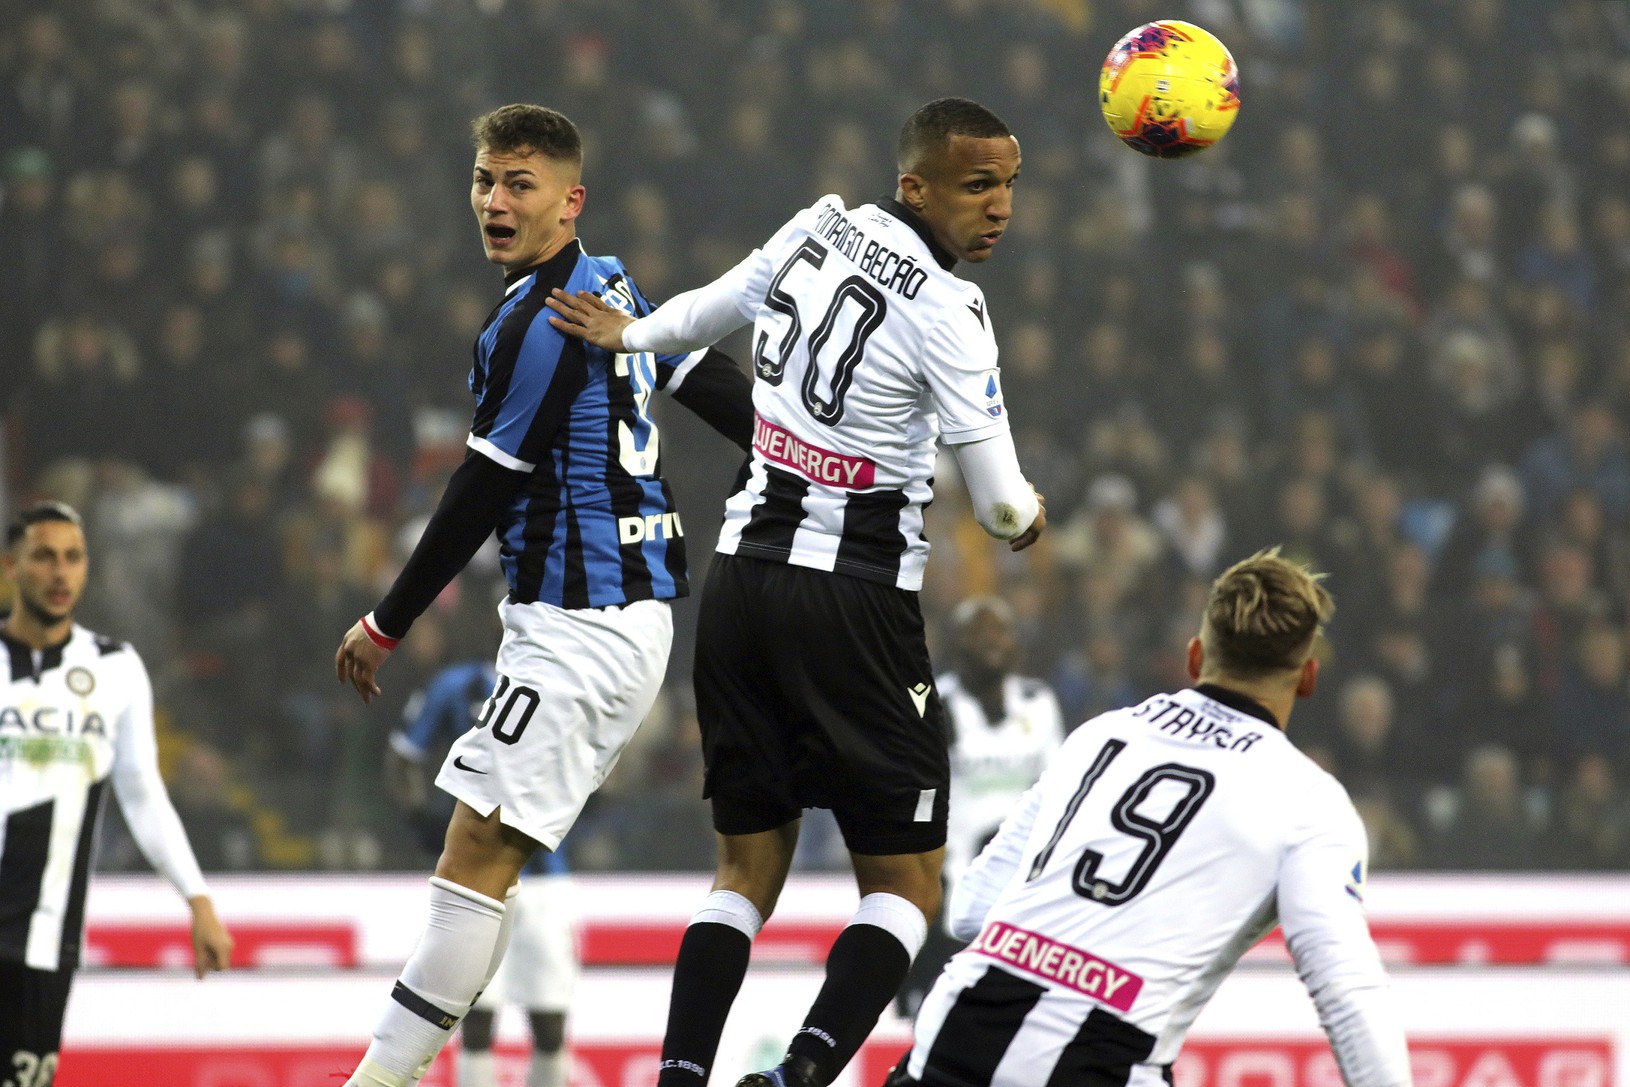 Momentka zo zápasu Udinese